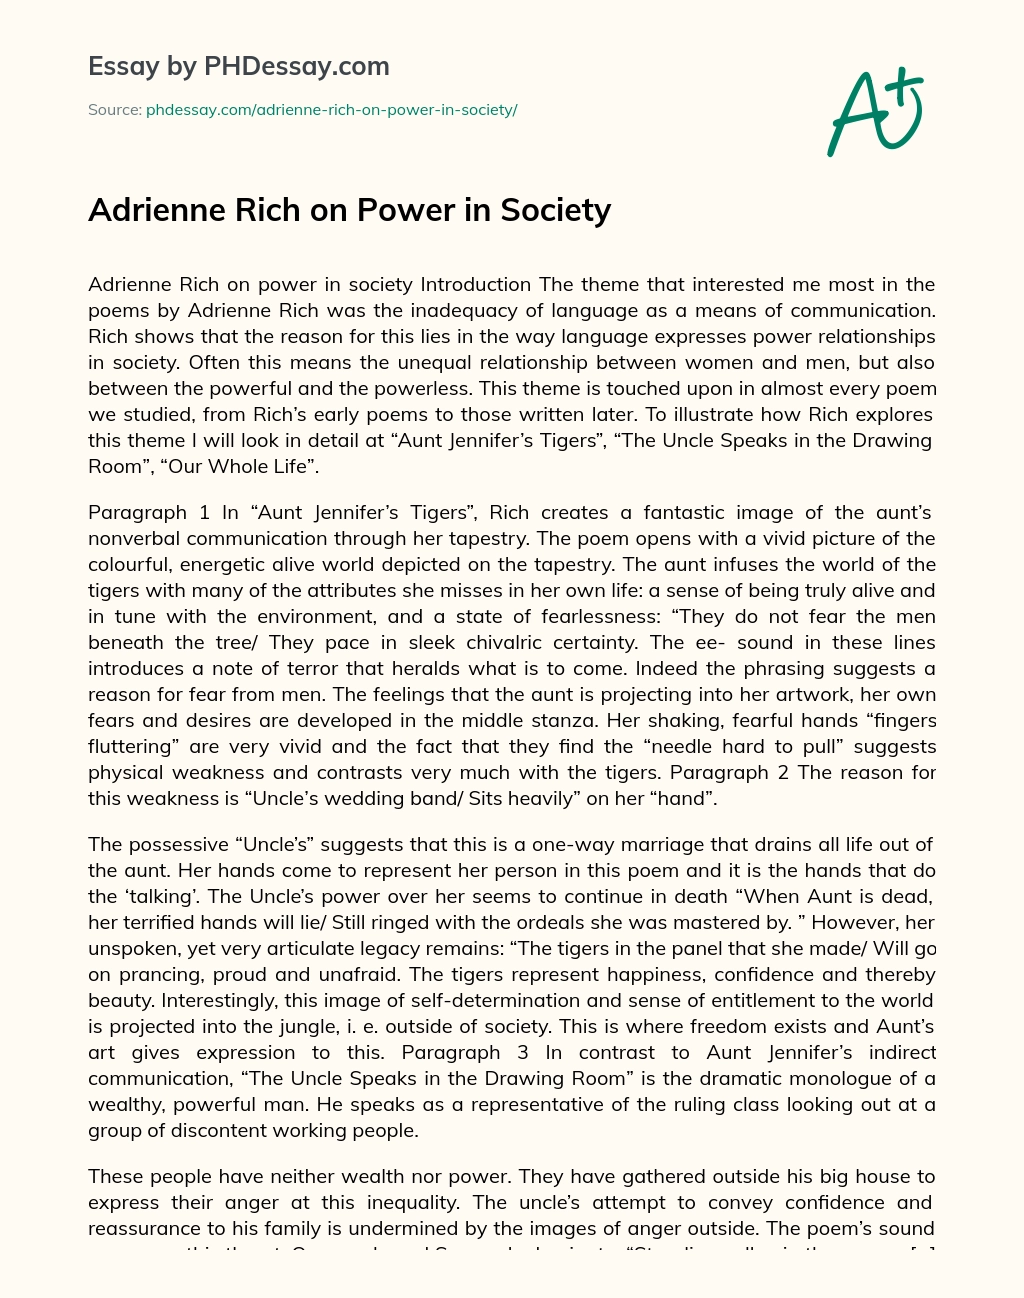 Adrienne Rich on Power in Society essay